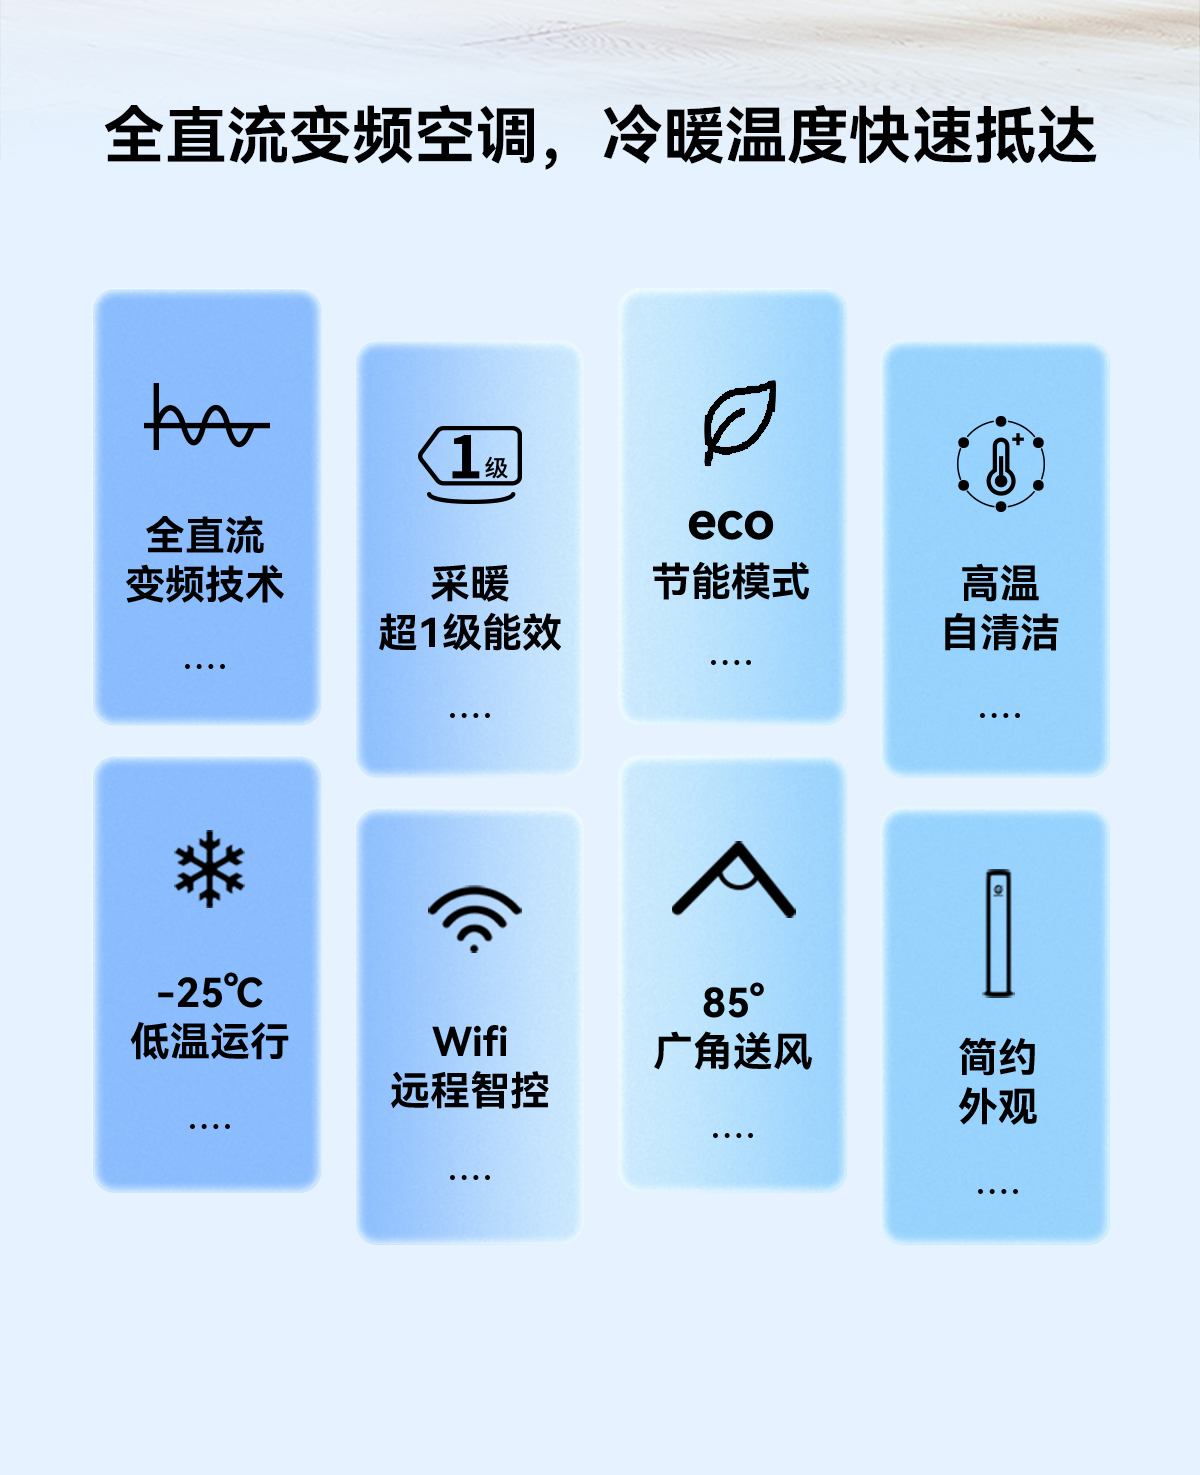 尊龙凯时·(中国游)官方网站